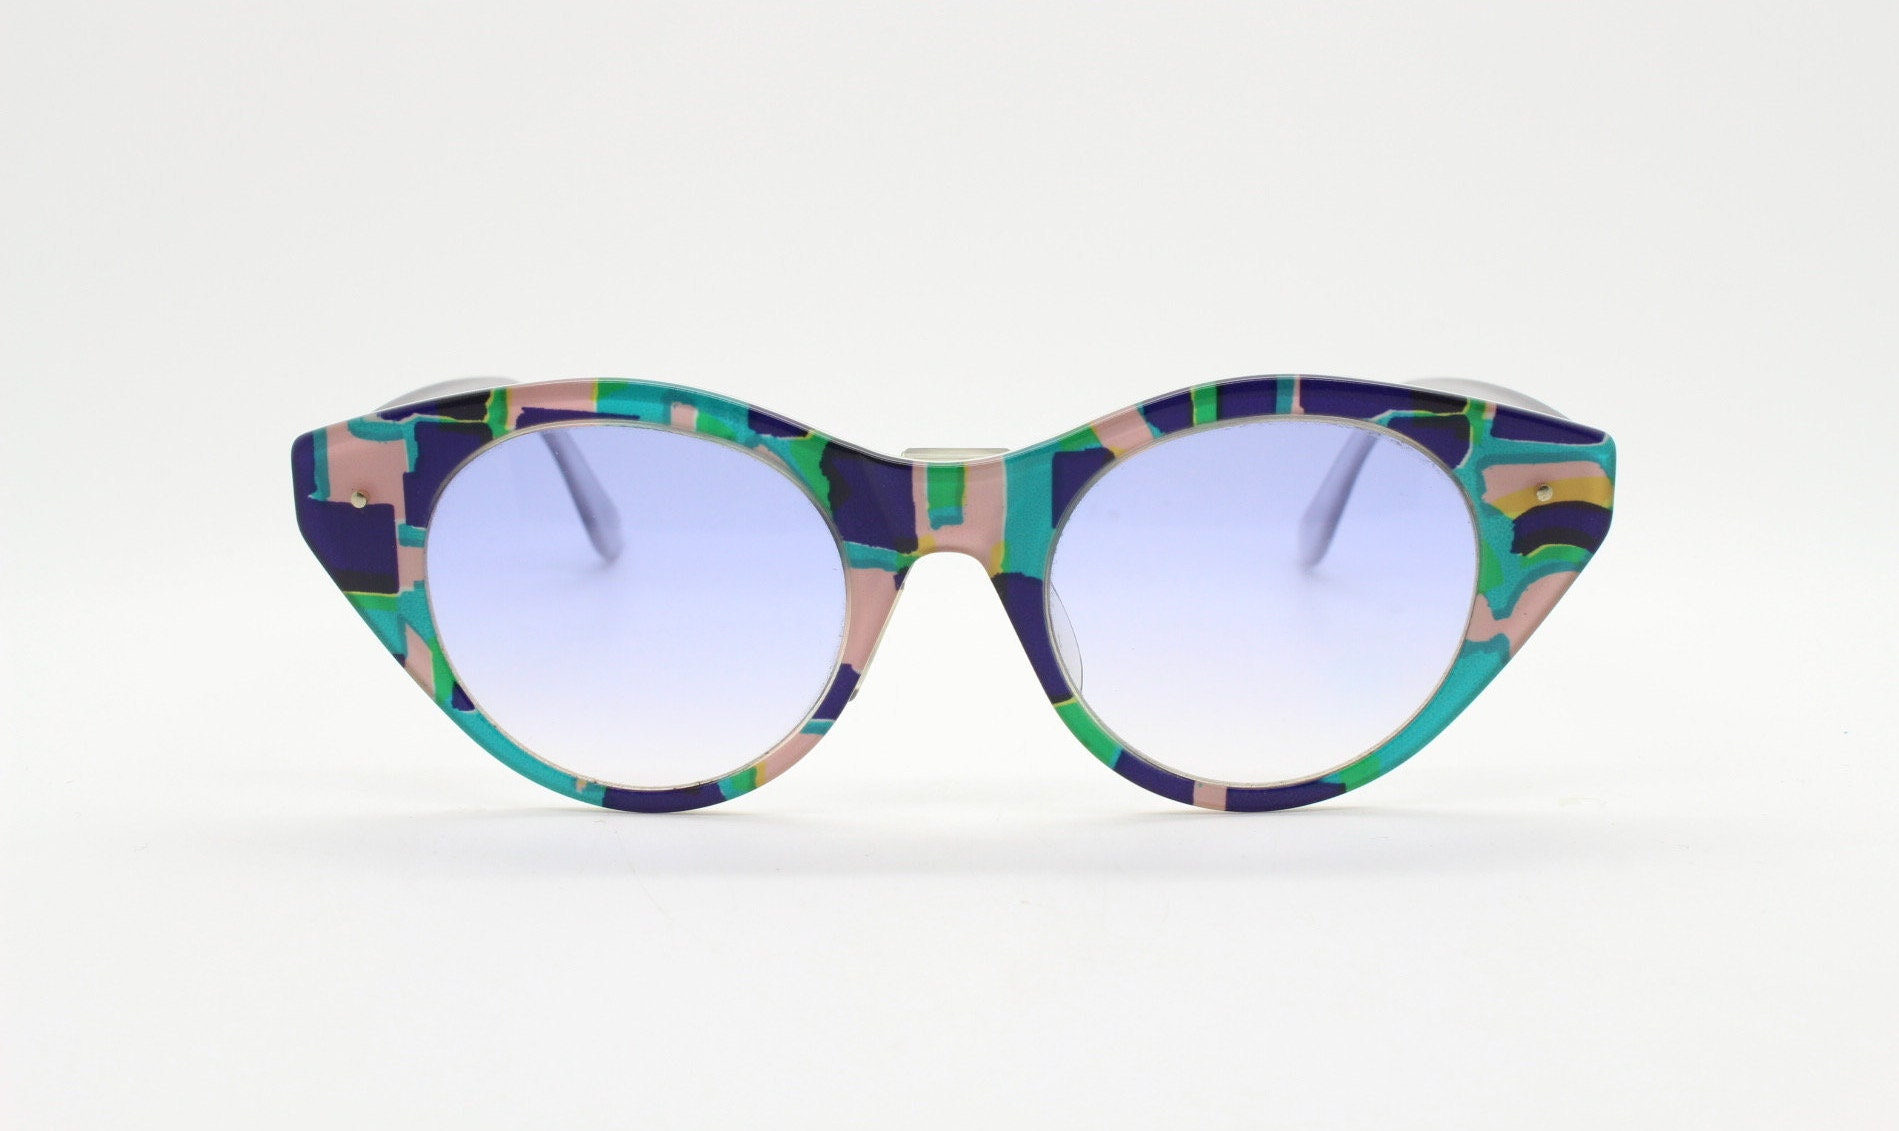 Swatch 90s Cat Eye Modular Sunglasses Made in Switzerland. - Etsy UK